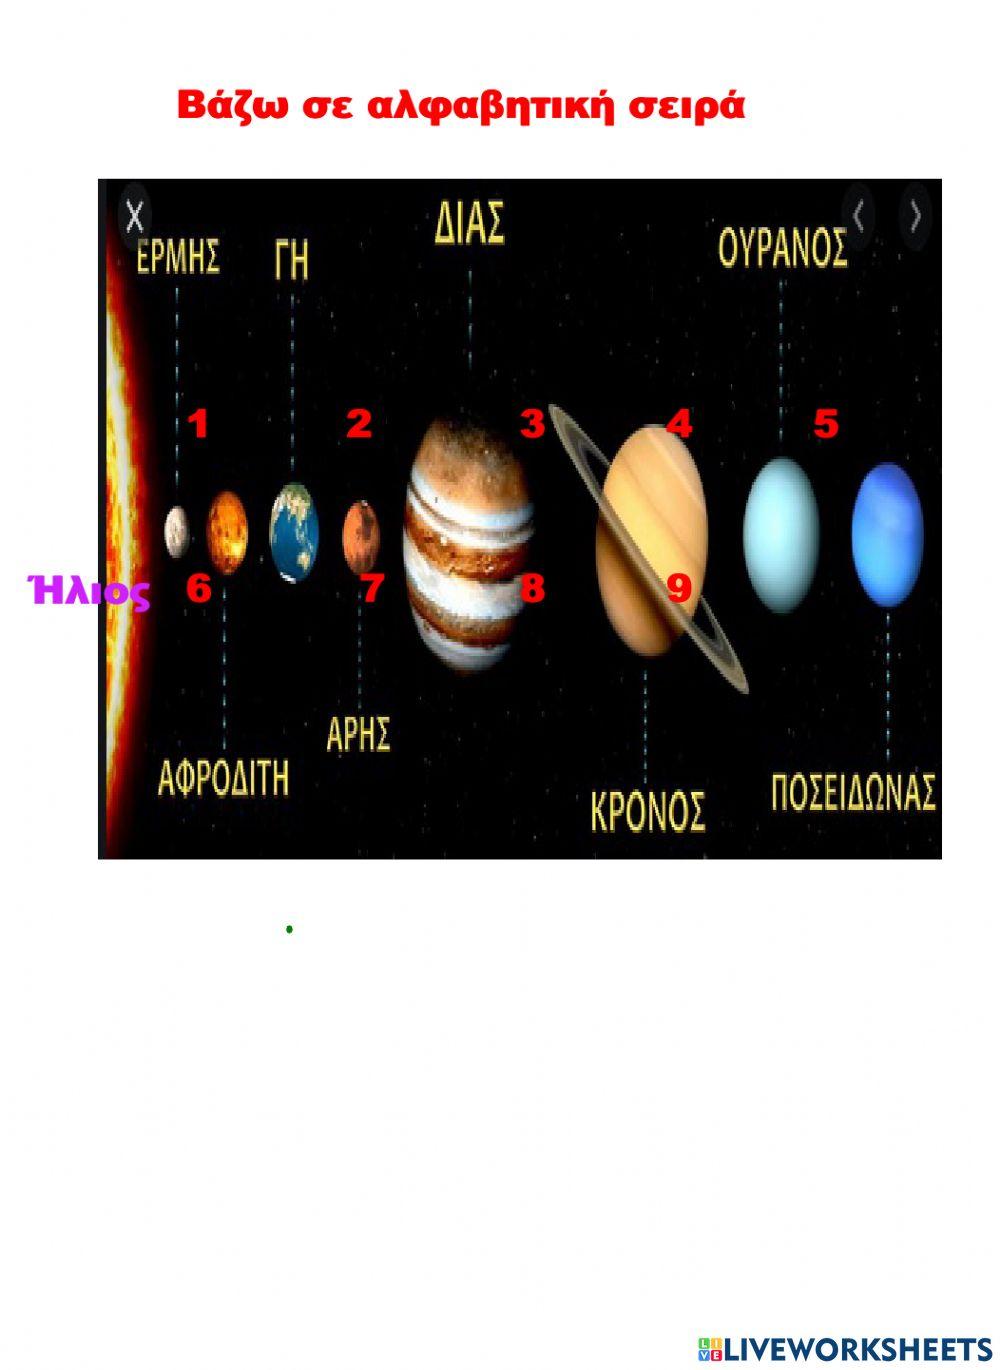 Αλφαβητική σειρά το ηλιακό μας σύστημα